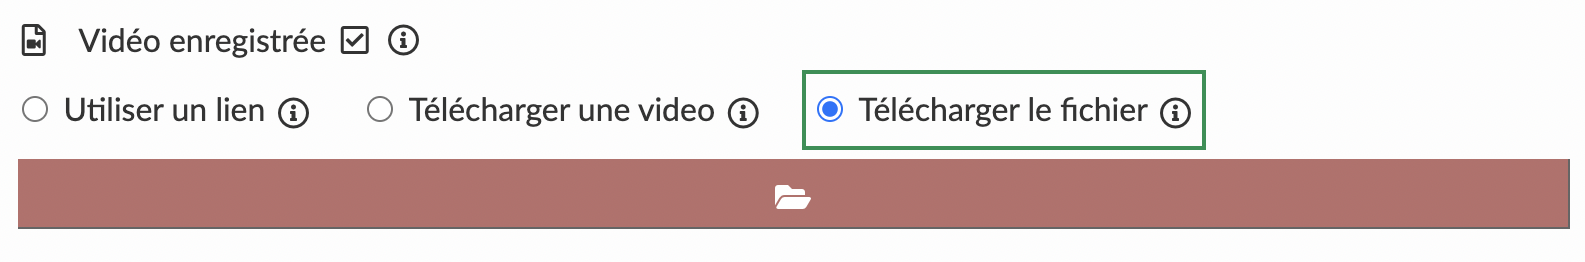 Télécharger le fichier dans une activité avec le mode vidéo préenregistrée